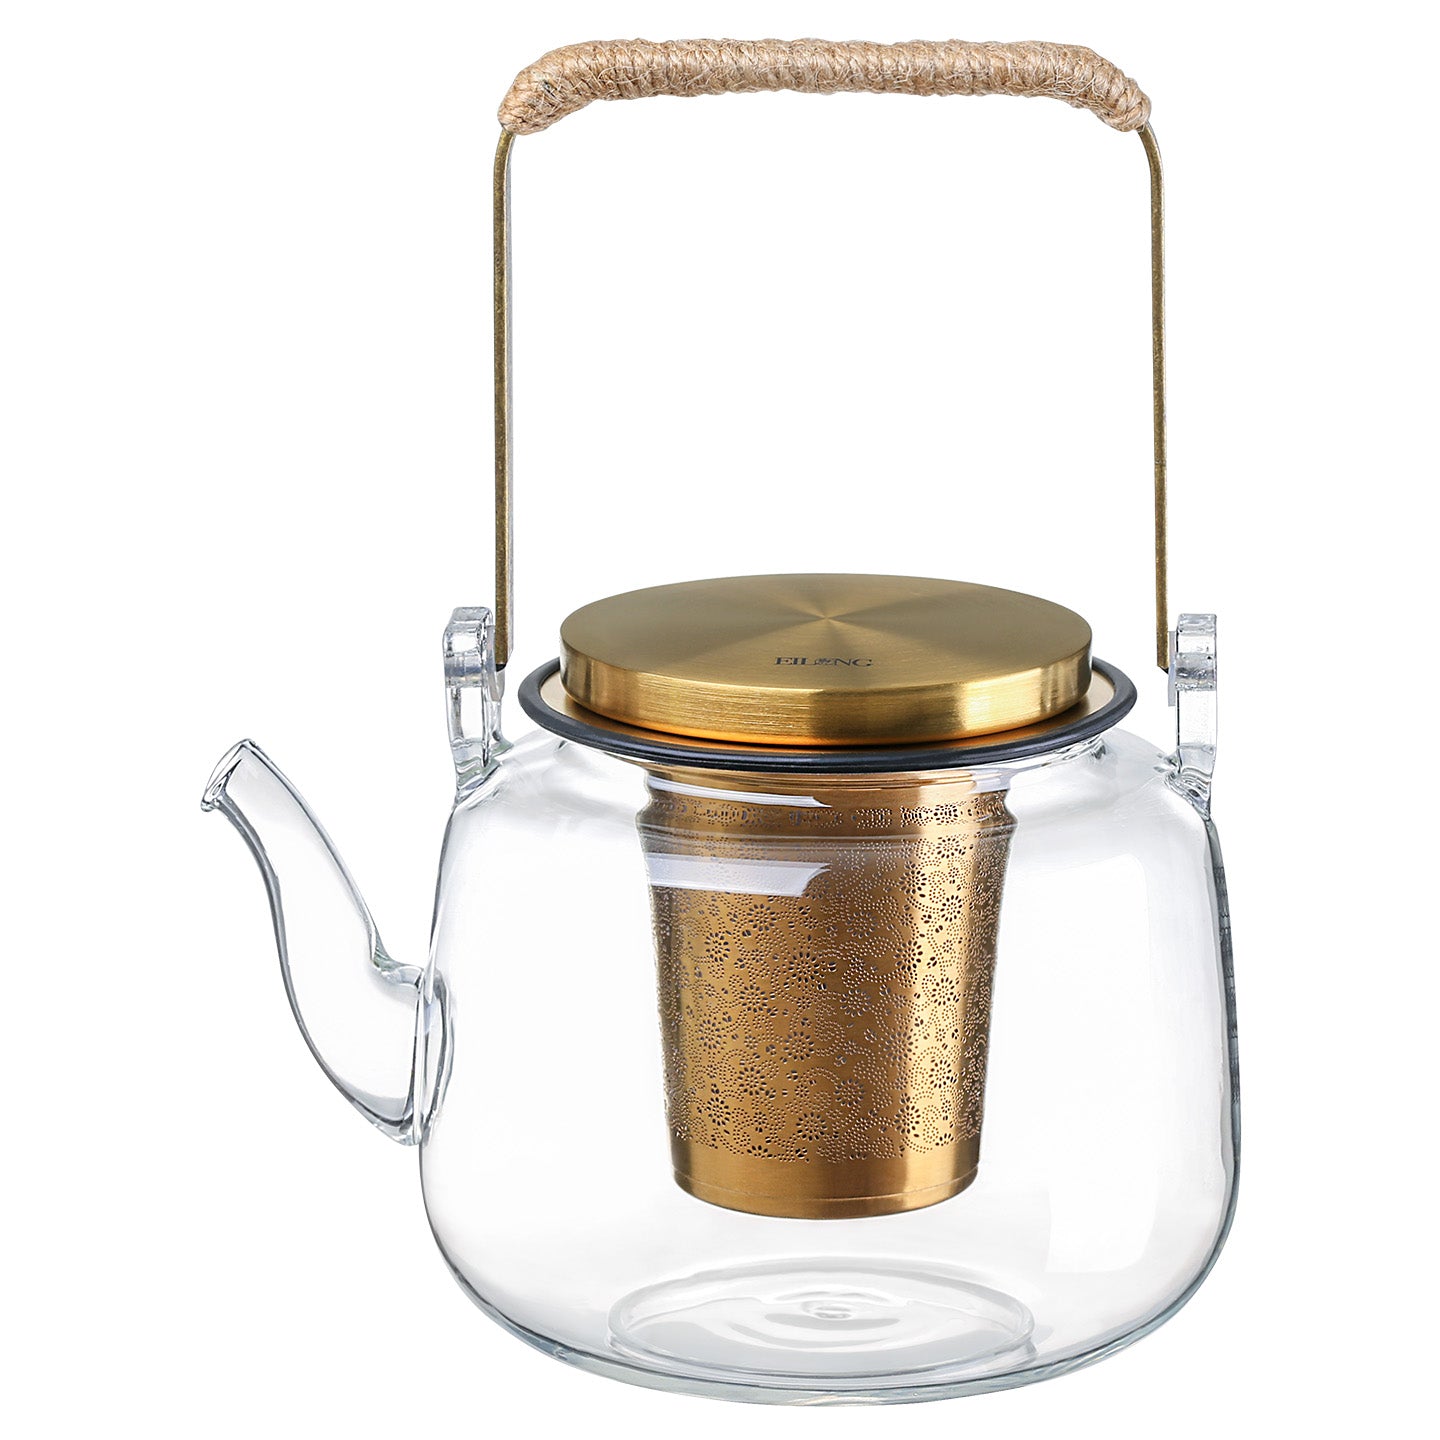 https://www.eilong.com/cdn/shop/products/glass-teapot-Infuser-aurora-handle-gold-700ml.jpg?v=1654755386